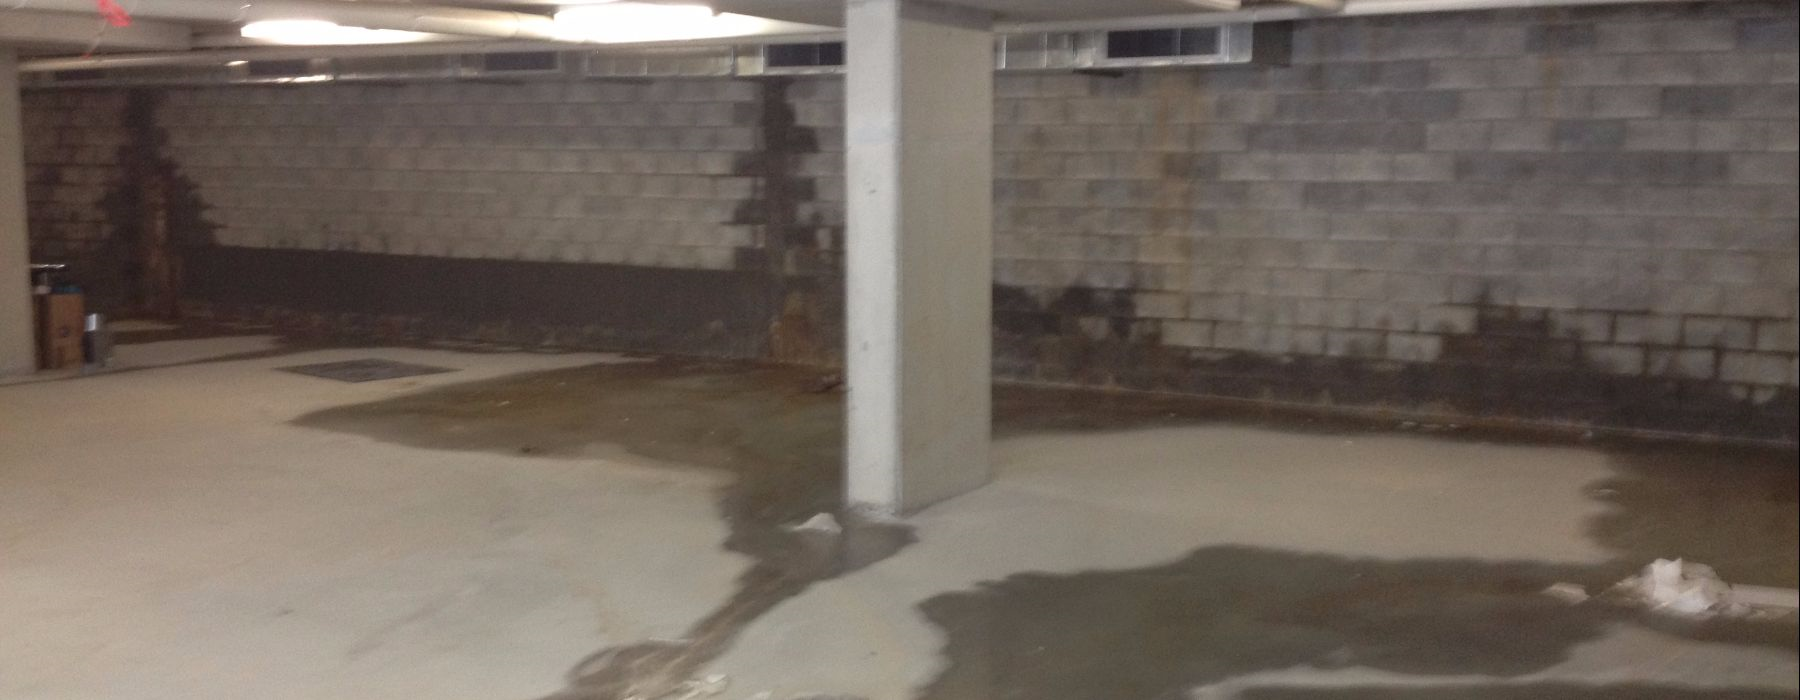 Leaking damp wall - rising damp - water ingress - garage